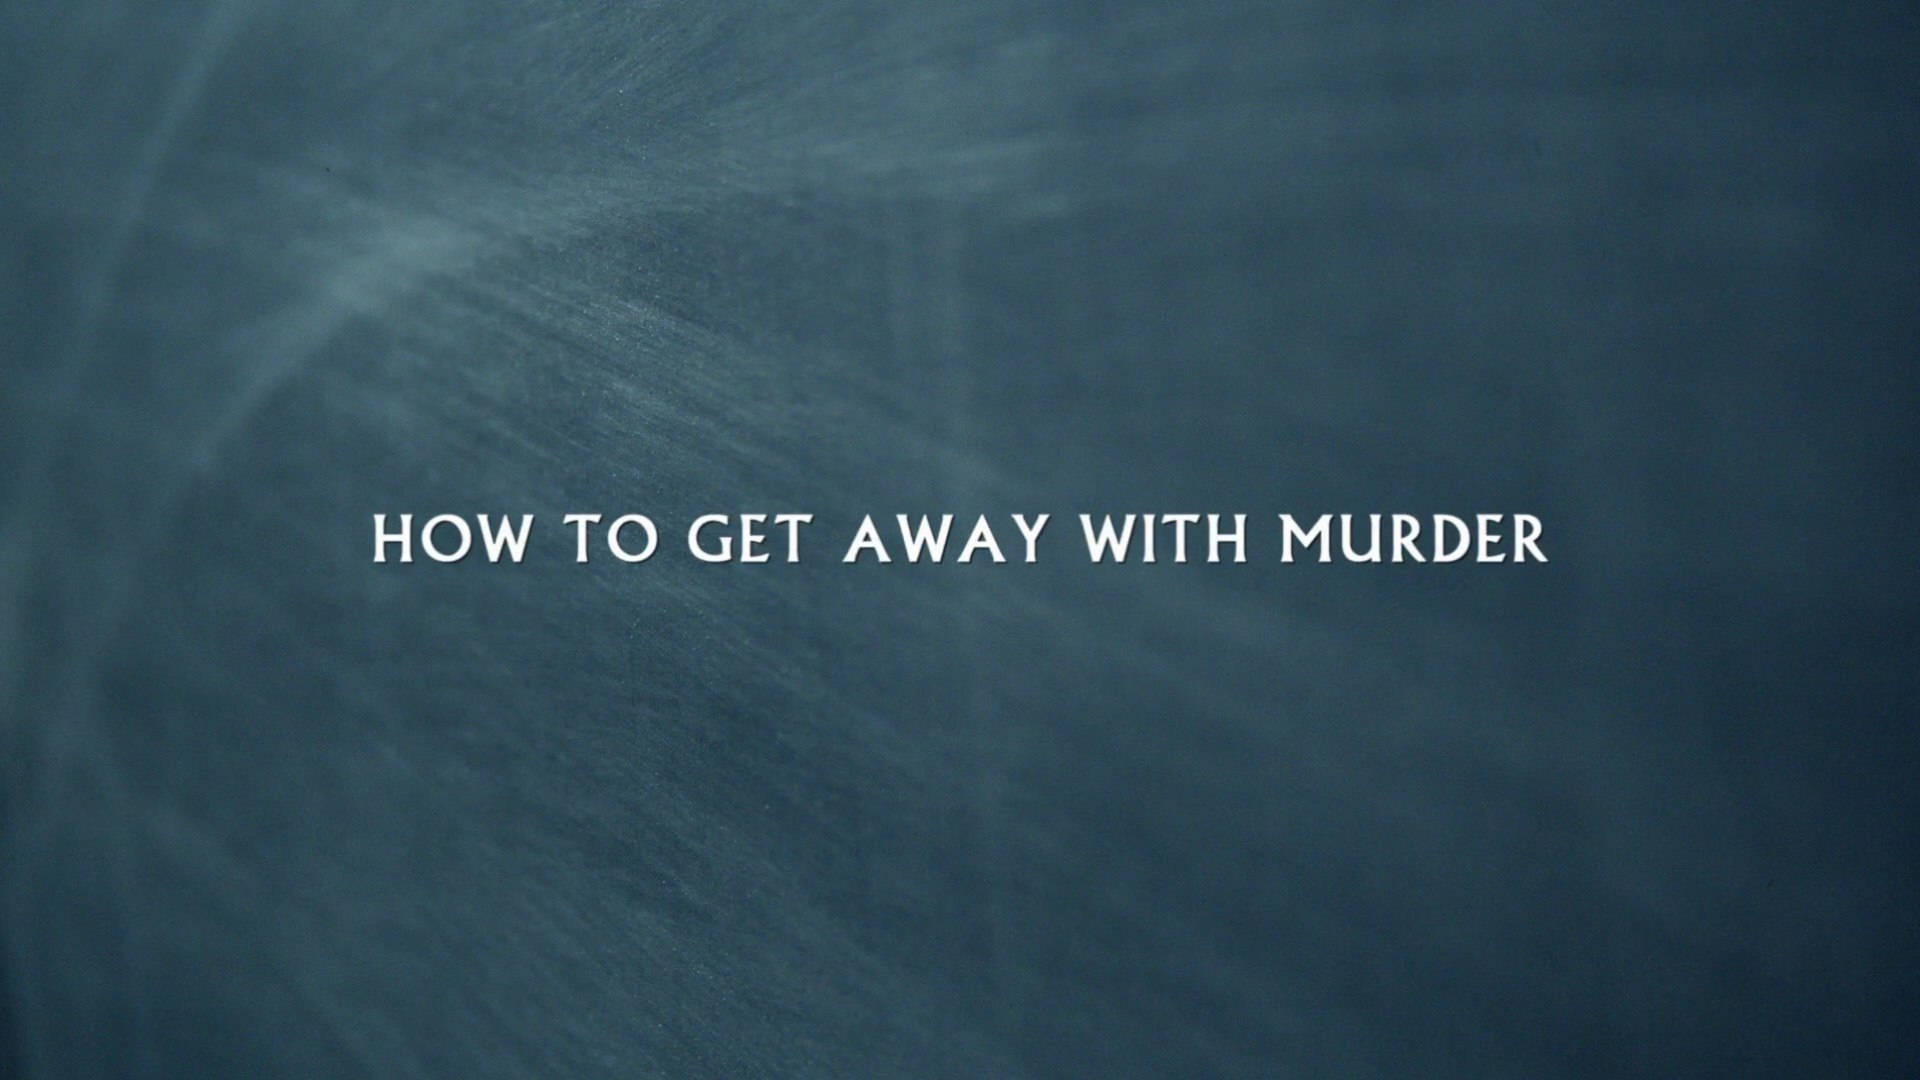 Cómosalir Impune De Un Pizarrón De How To Get Away With Murder Fondo de pantalla